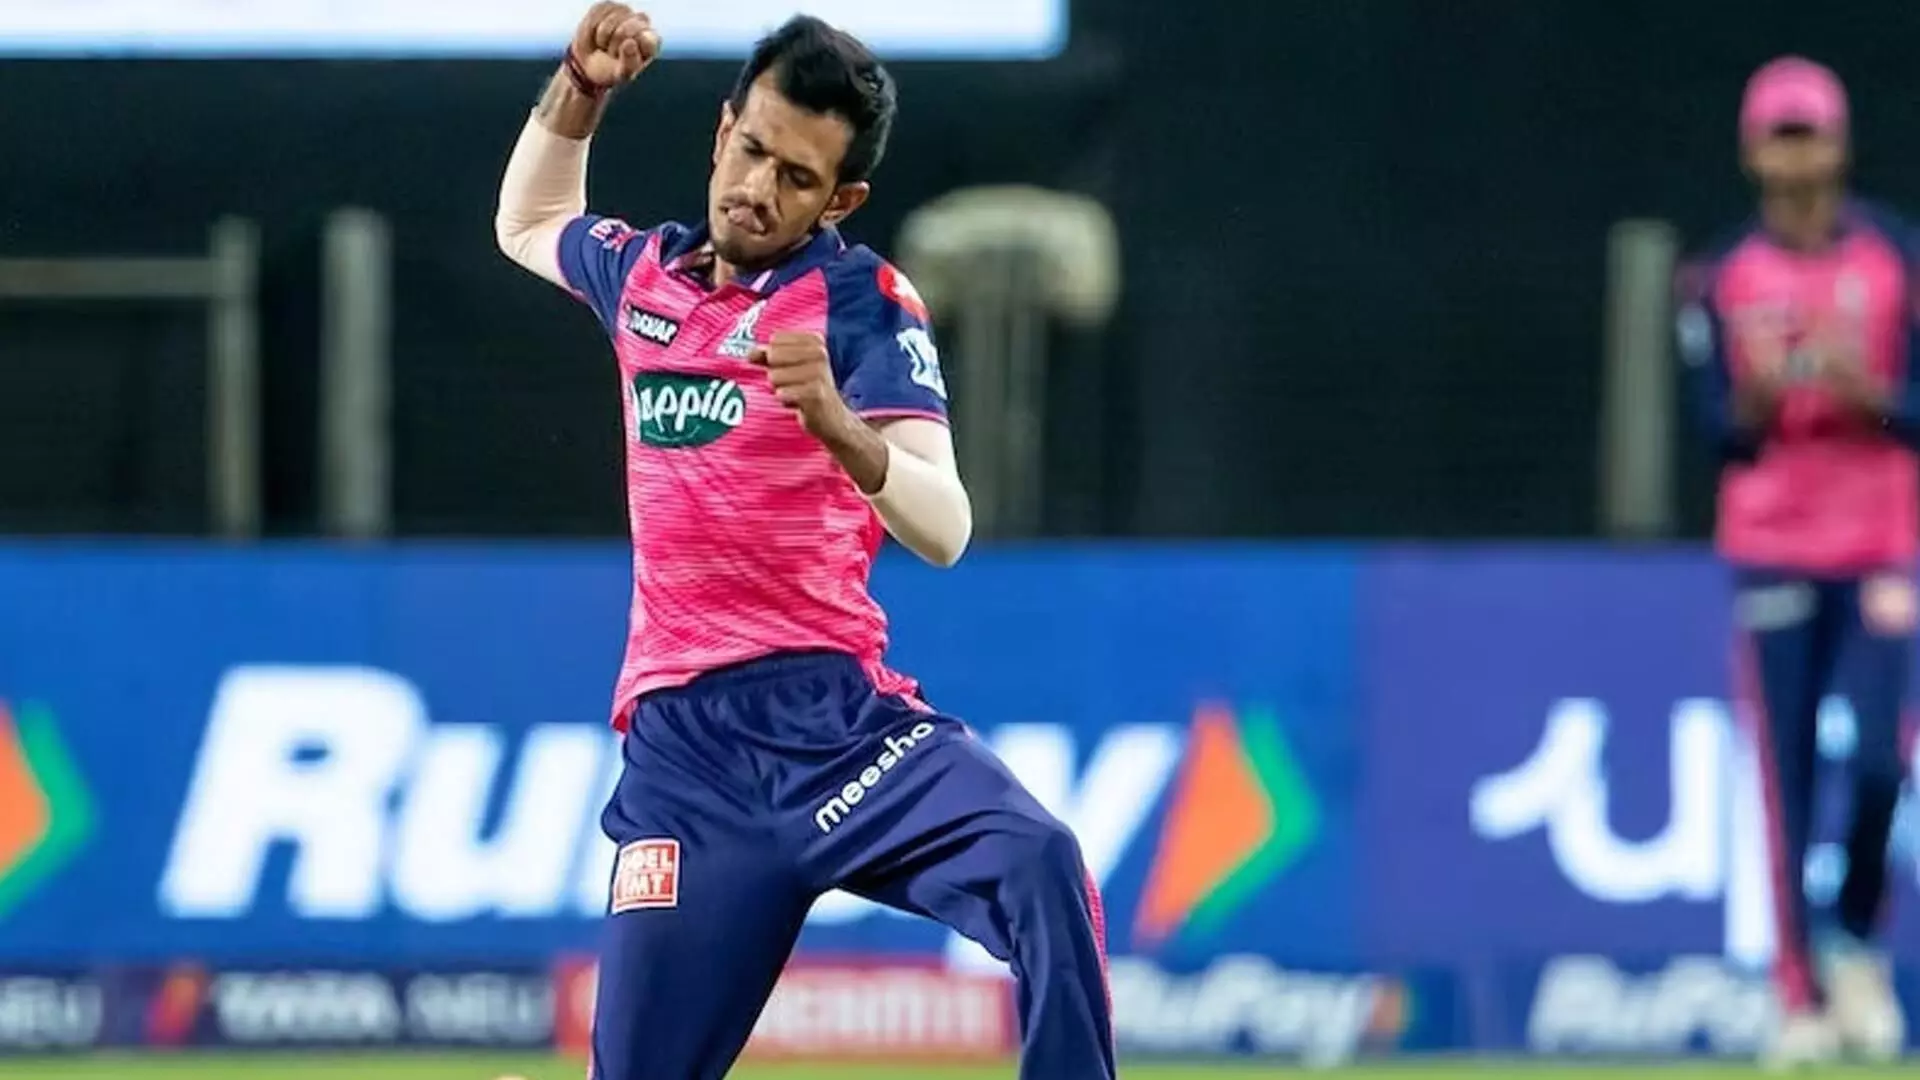 राजस्थान रॉयल्स के लेग-स्पिनर युजवेंद्र चहल 350 टी20 विकेट लेने वाले पहले भारतीय बने